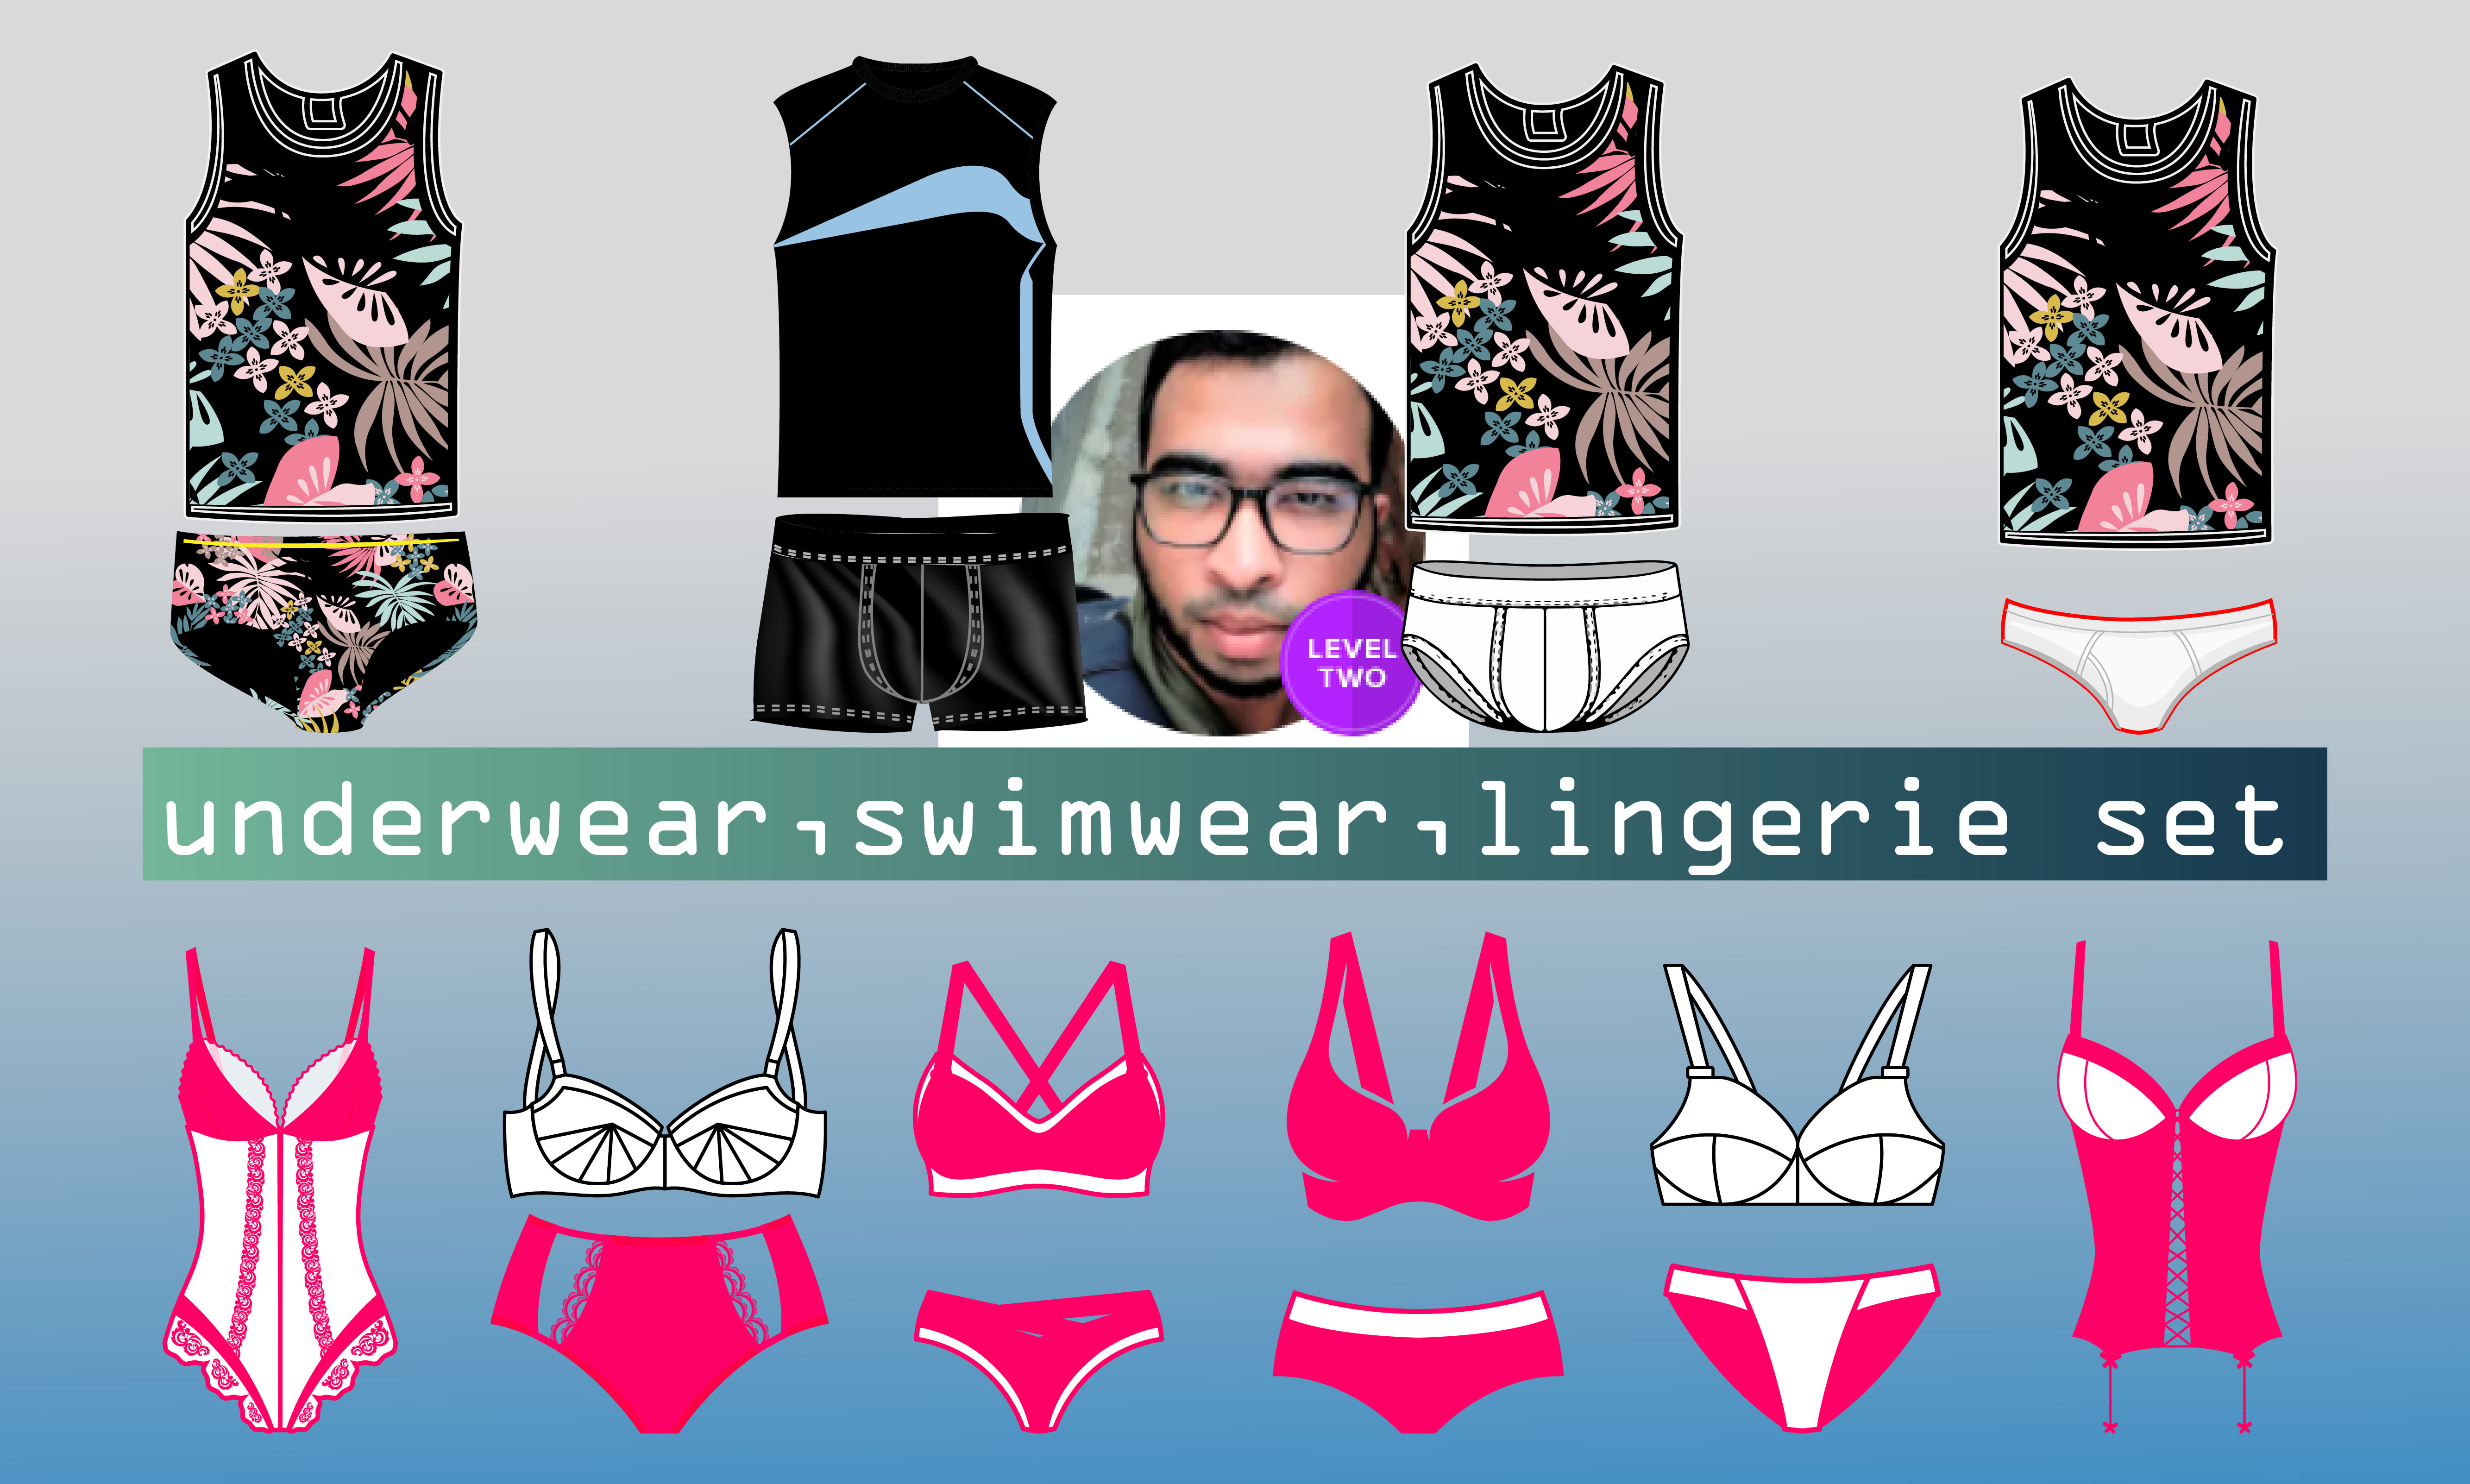 Design tech pack of underwear, lingerie and swimwear for men or women by  Engr_muhib